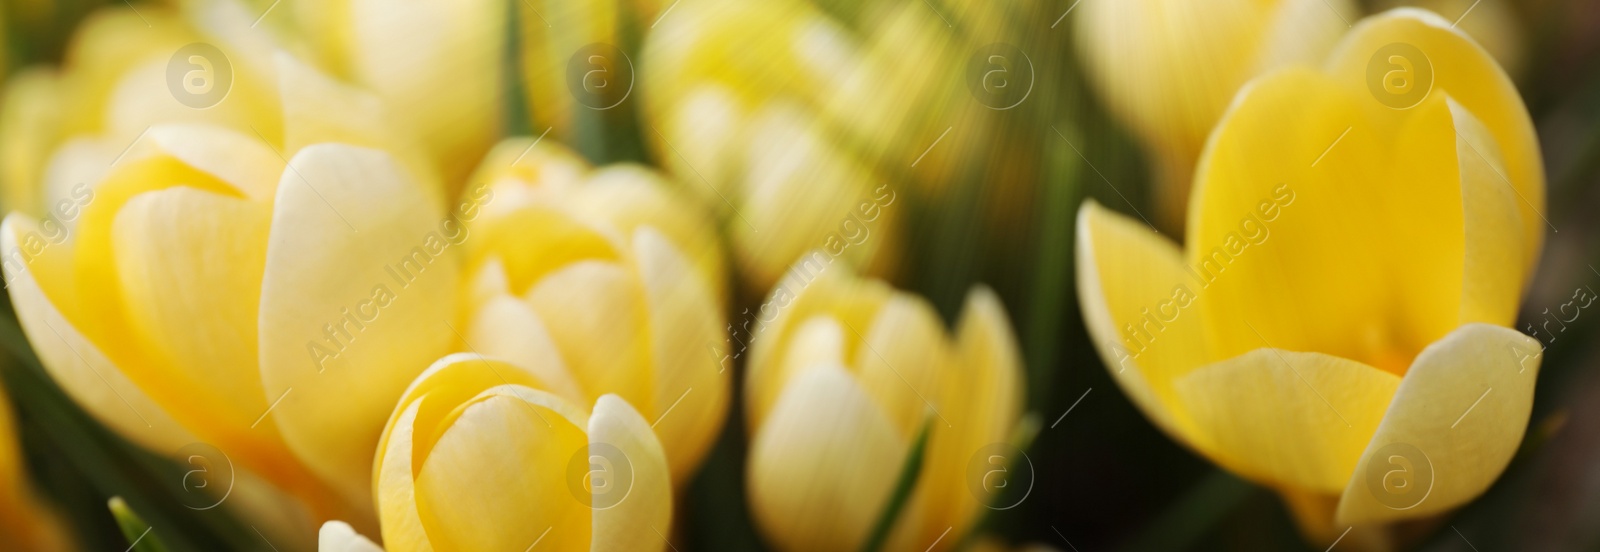 Image of Beautiful yellow crocus flowers growing in garden, closeup. Banner design 